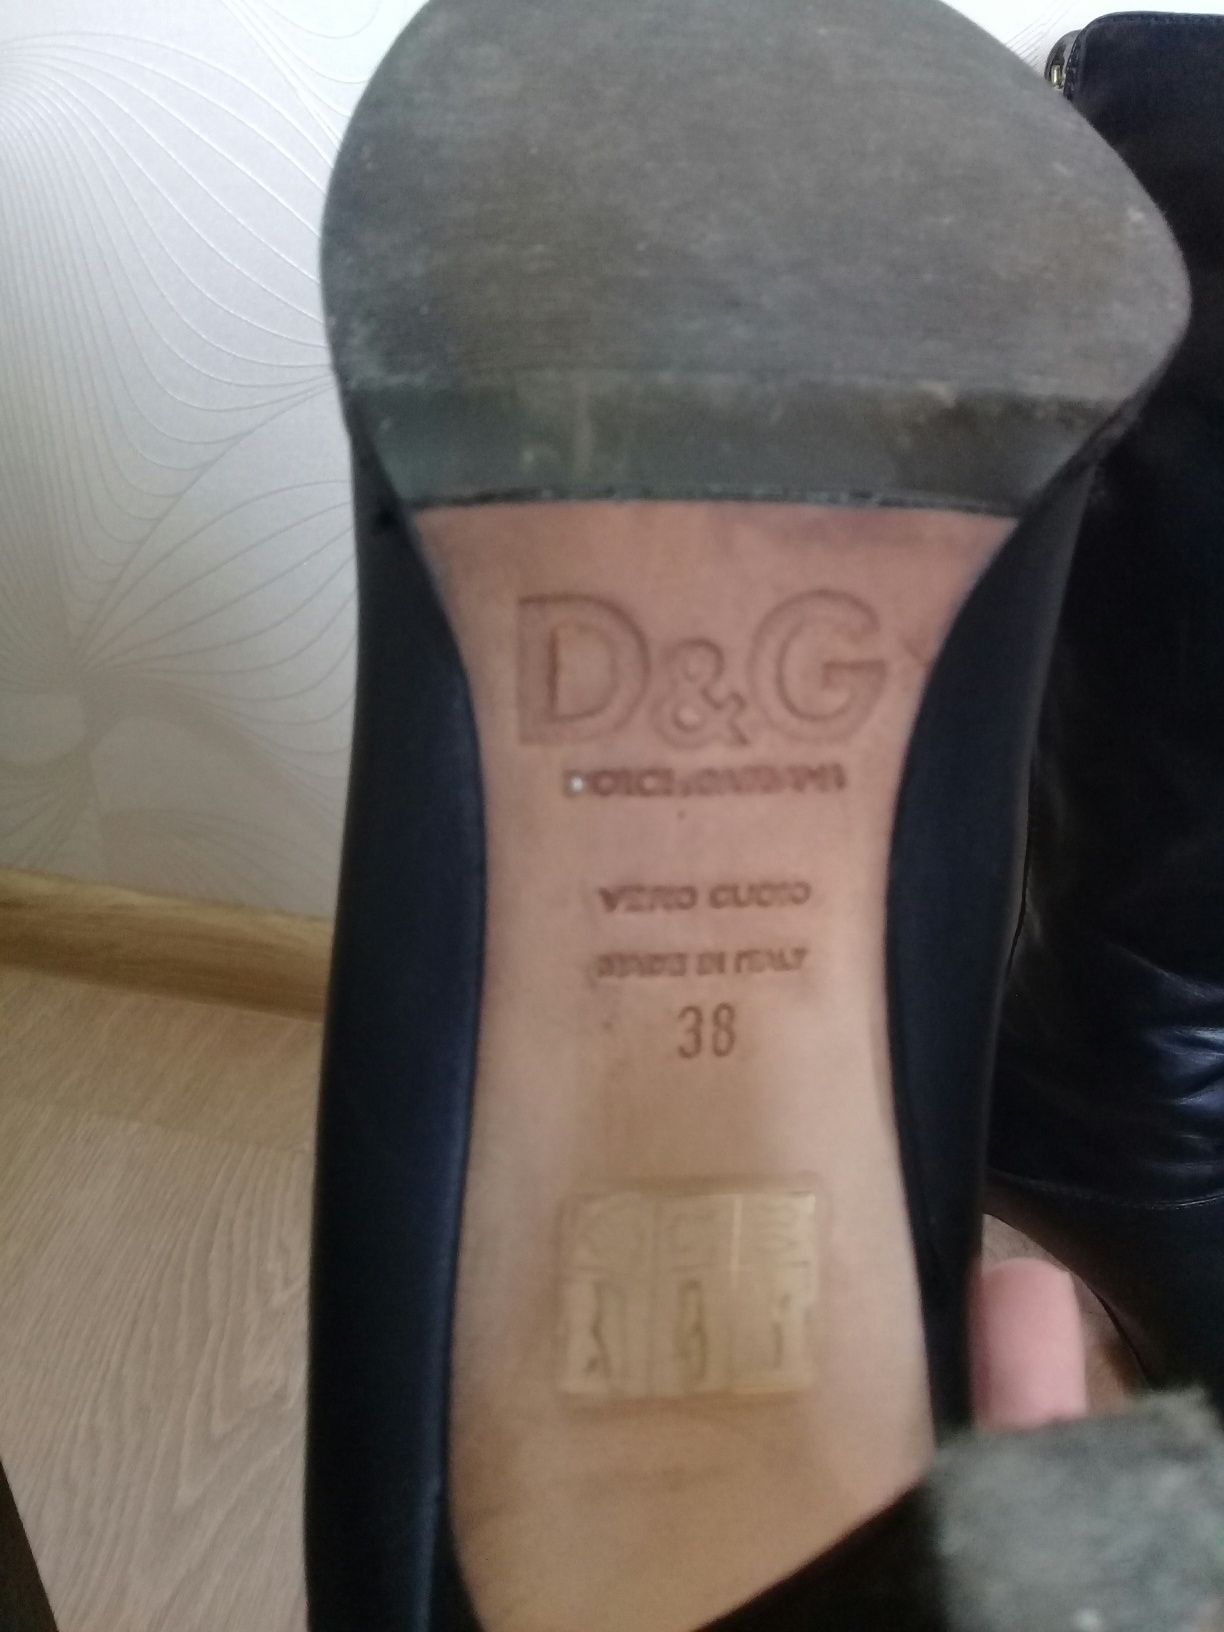 Брендовые сапоги от D&G